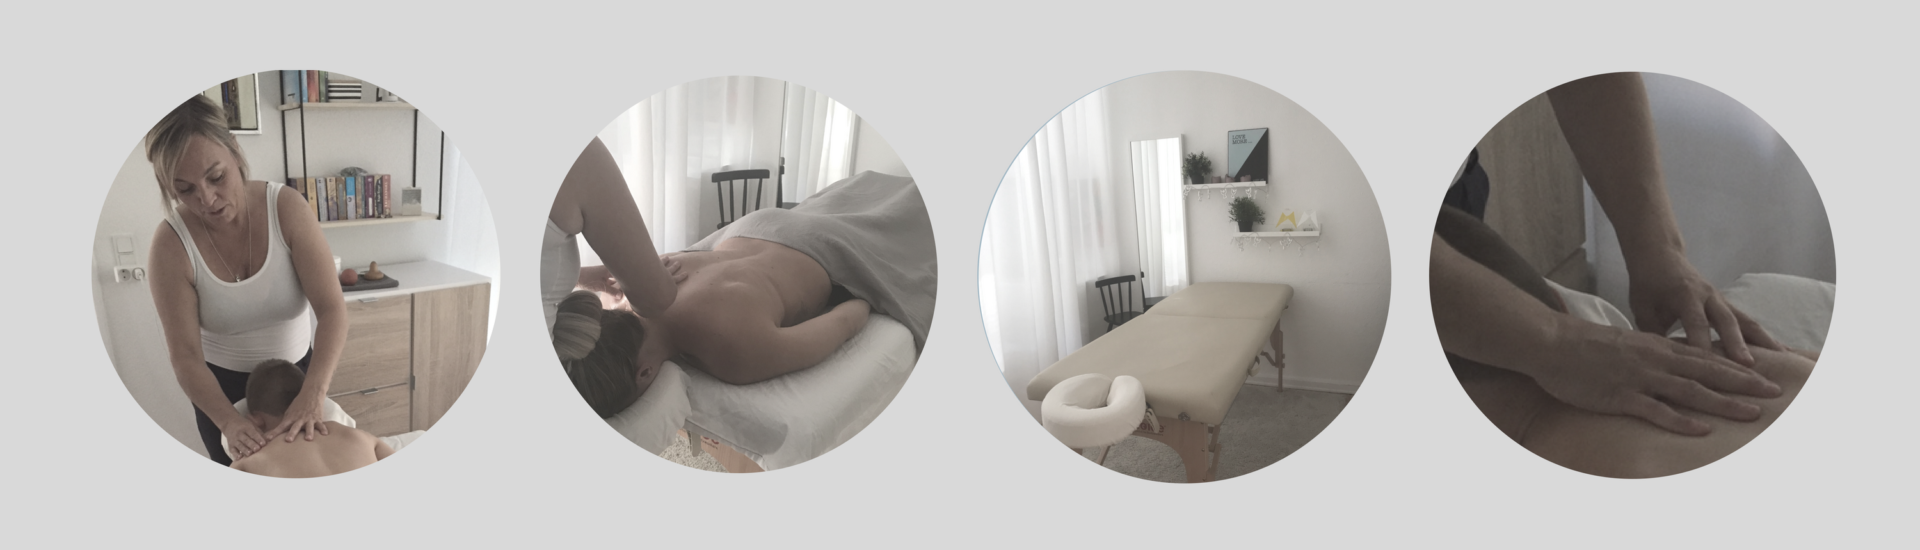 forside massagebilleder af klinik balskilde